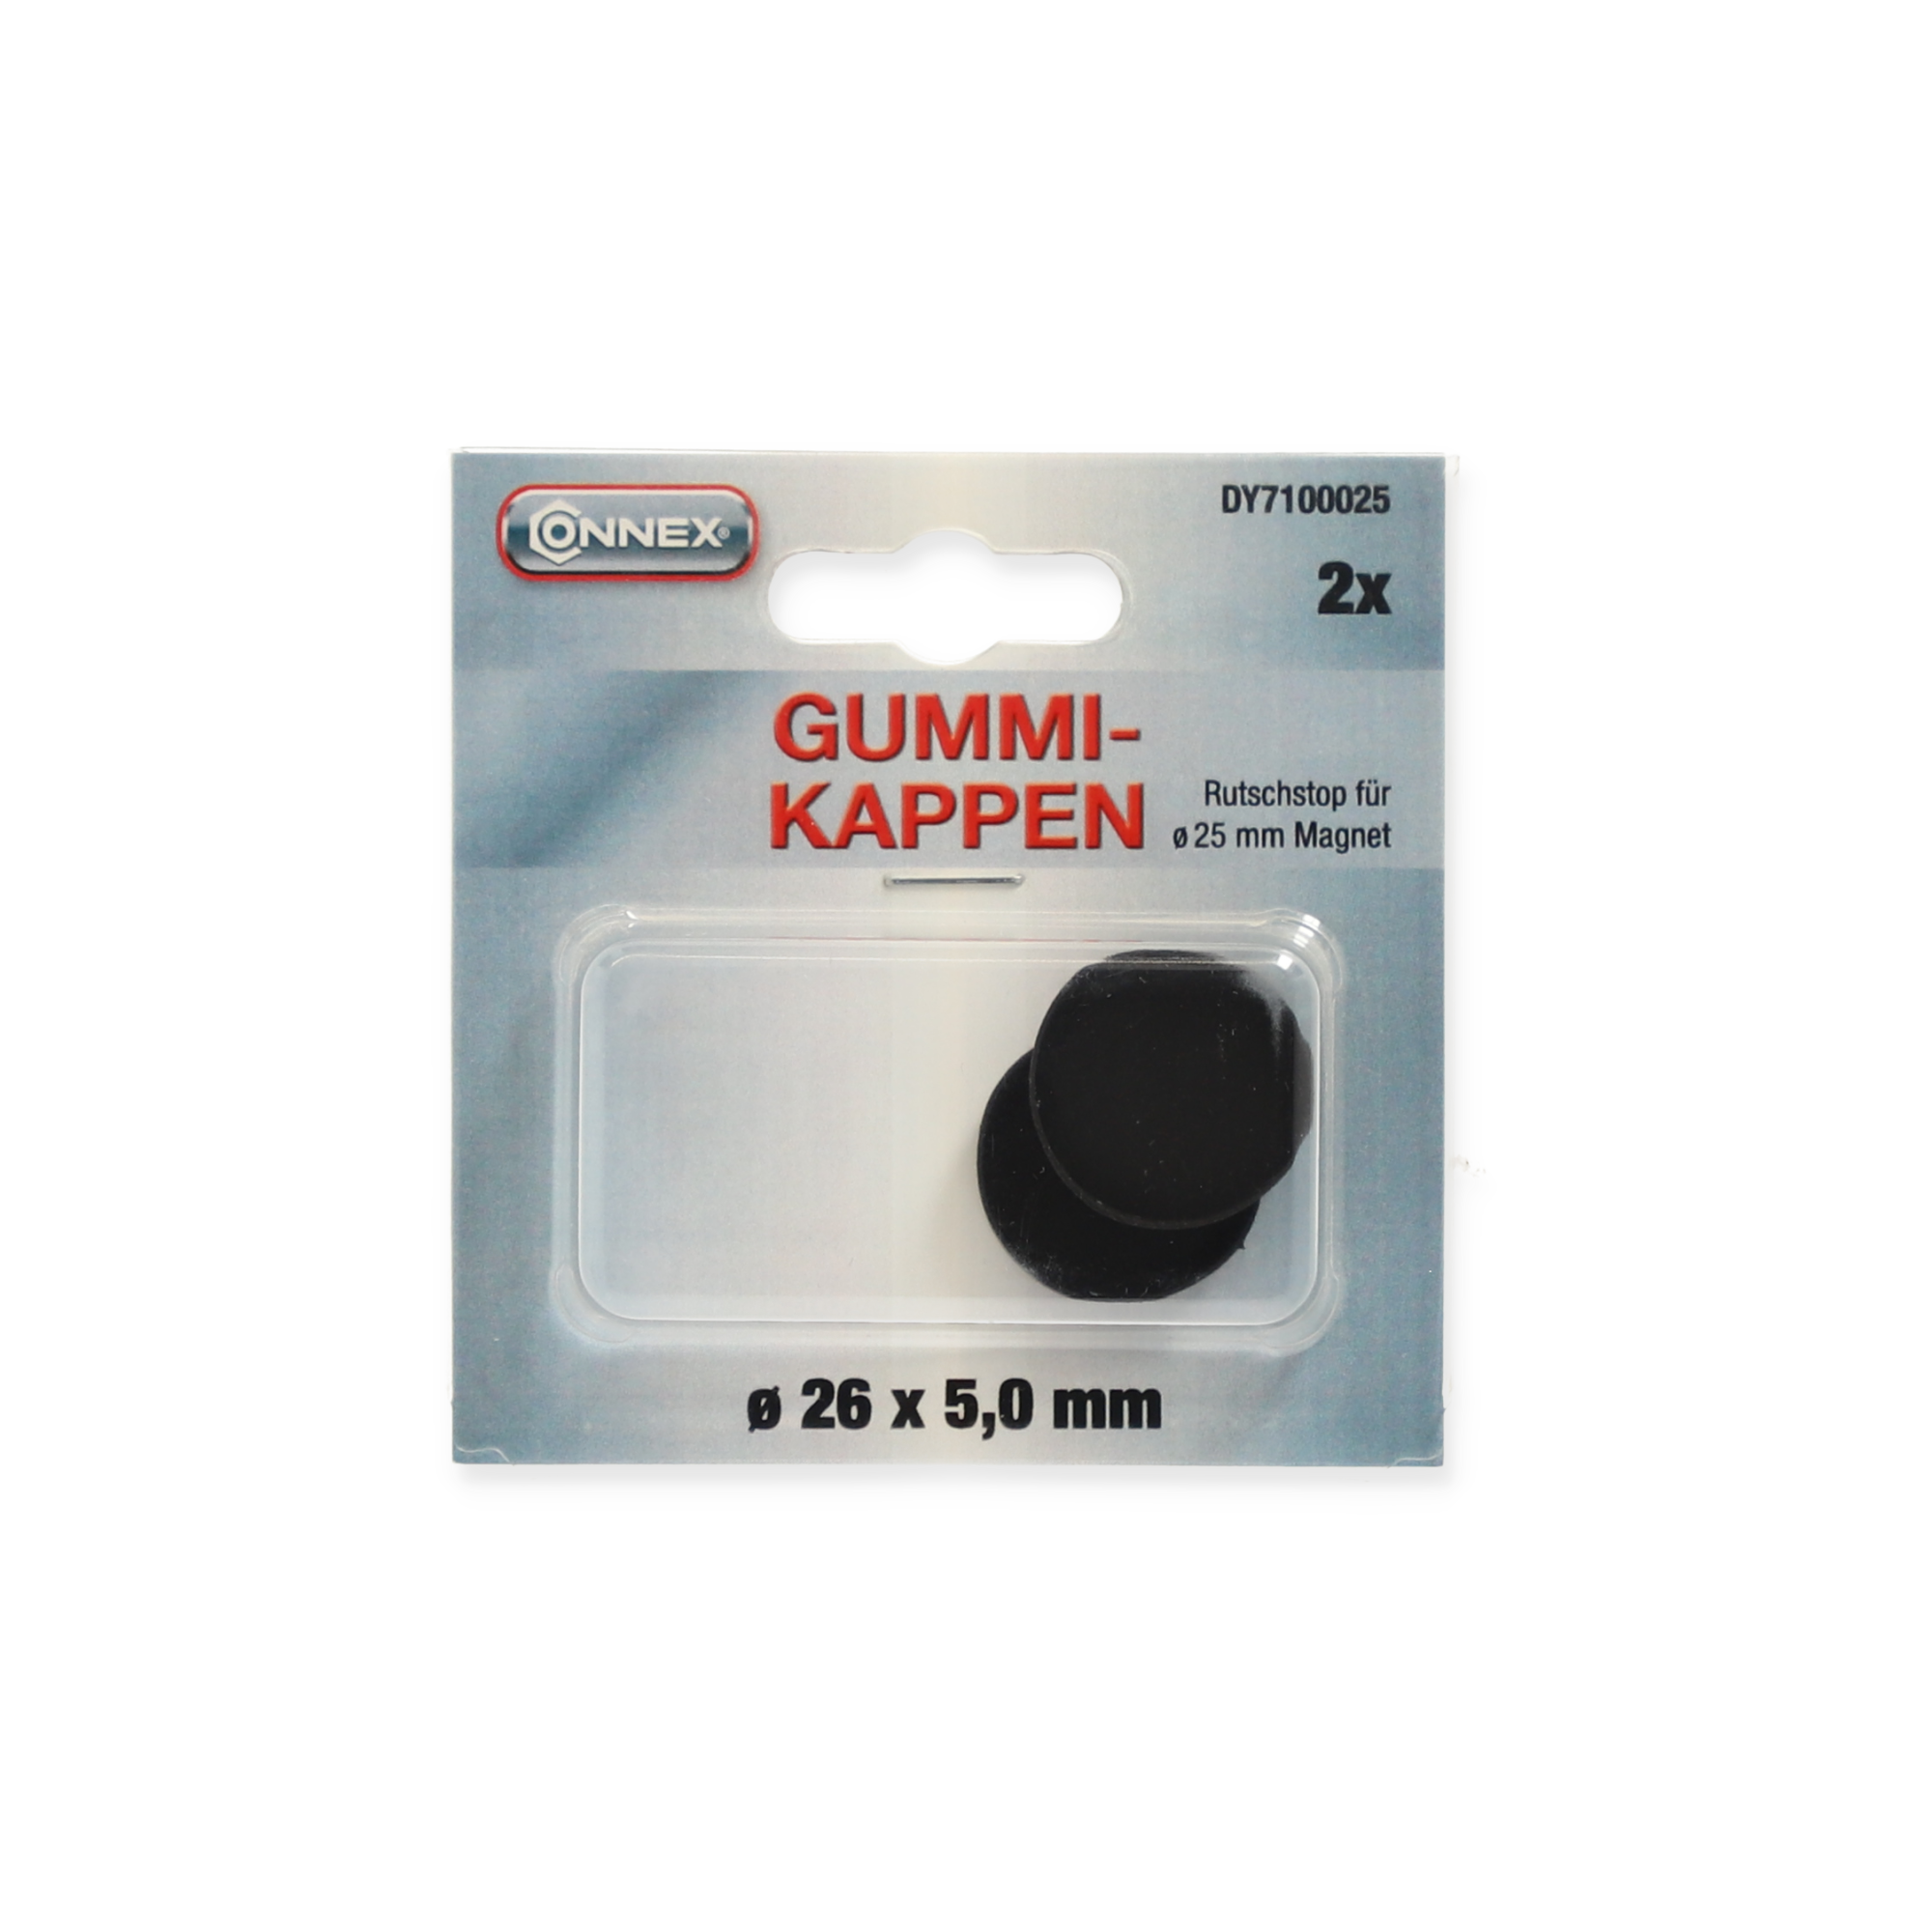 Gummikappe für Magnet schwarz Ø 26 x 5 mm 2 Stück + product picture